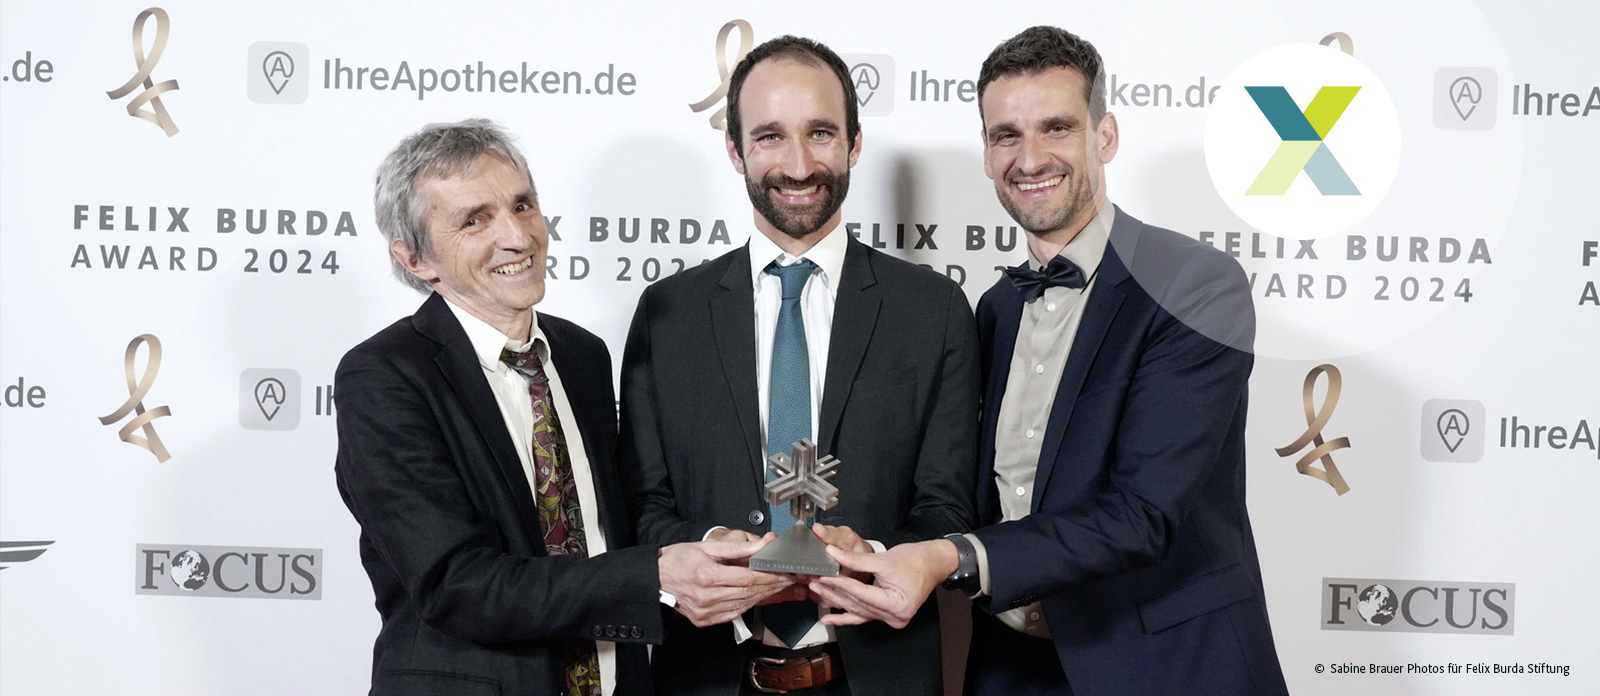 Felix Burda Award 2024-Preisträger im Hotel Adlon Kempinski in Berlin am 21.04.2024, von li.: Hermann Brenner und sein Mitarbeiter Thomas Heisser sowie Michael Hoffmeiste